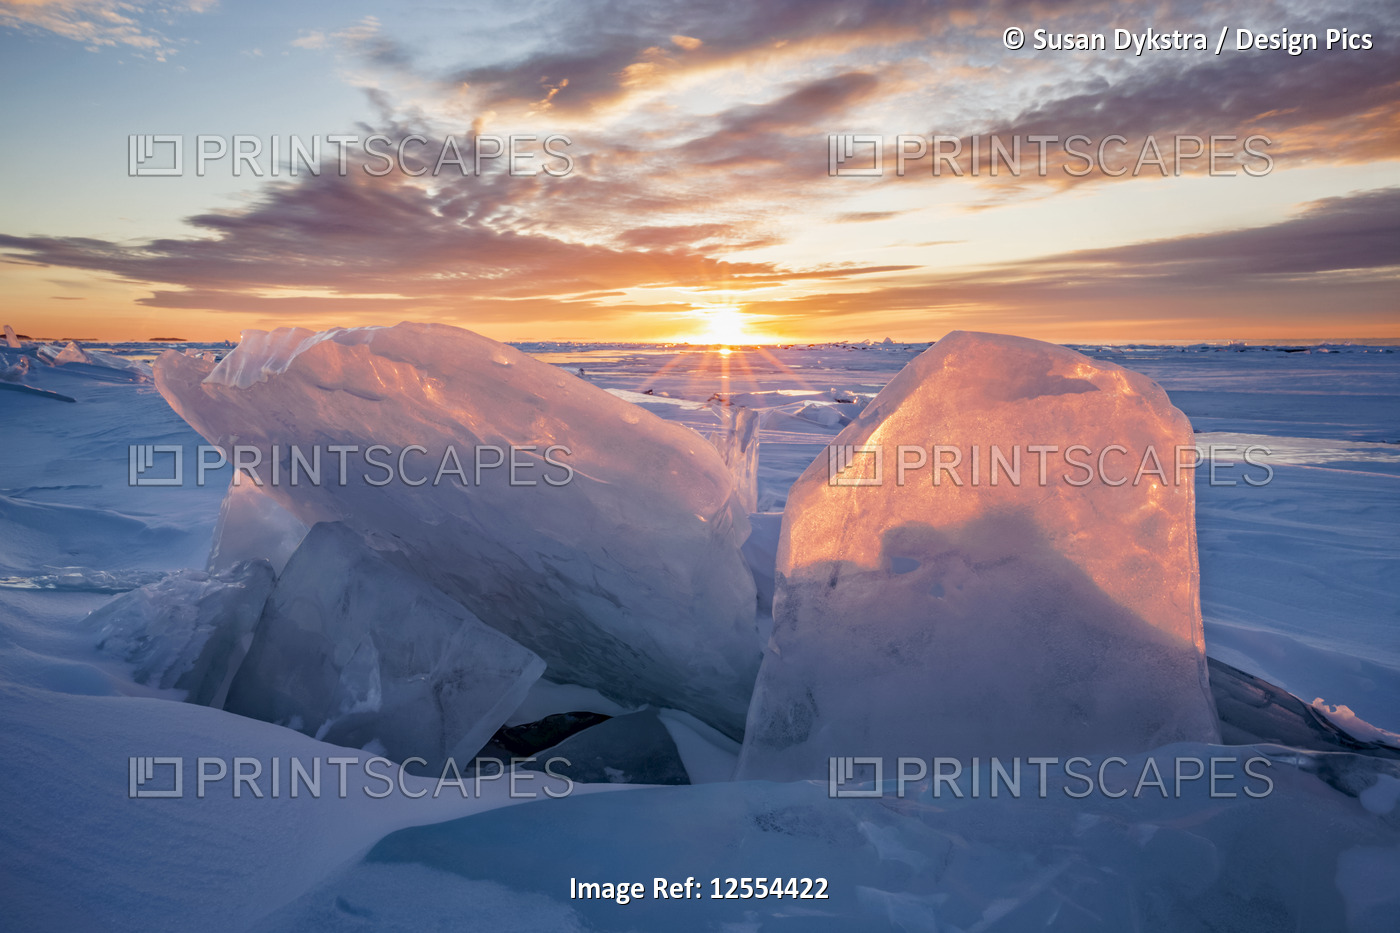 Sunlit Ice Chards on Lake Superior #1